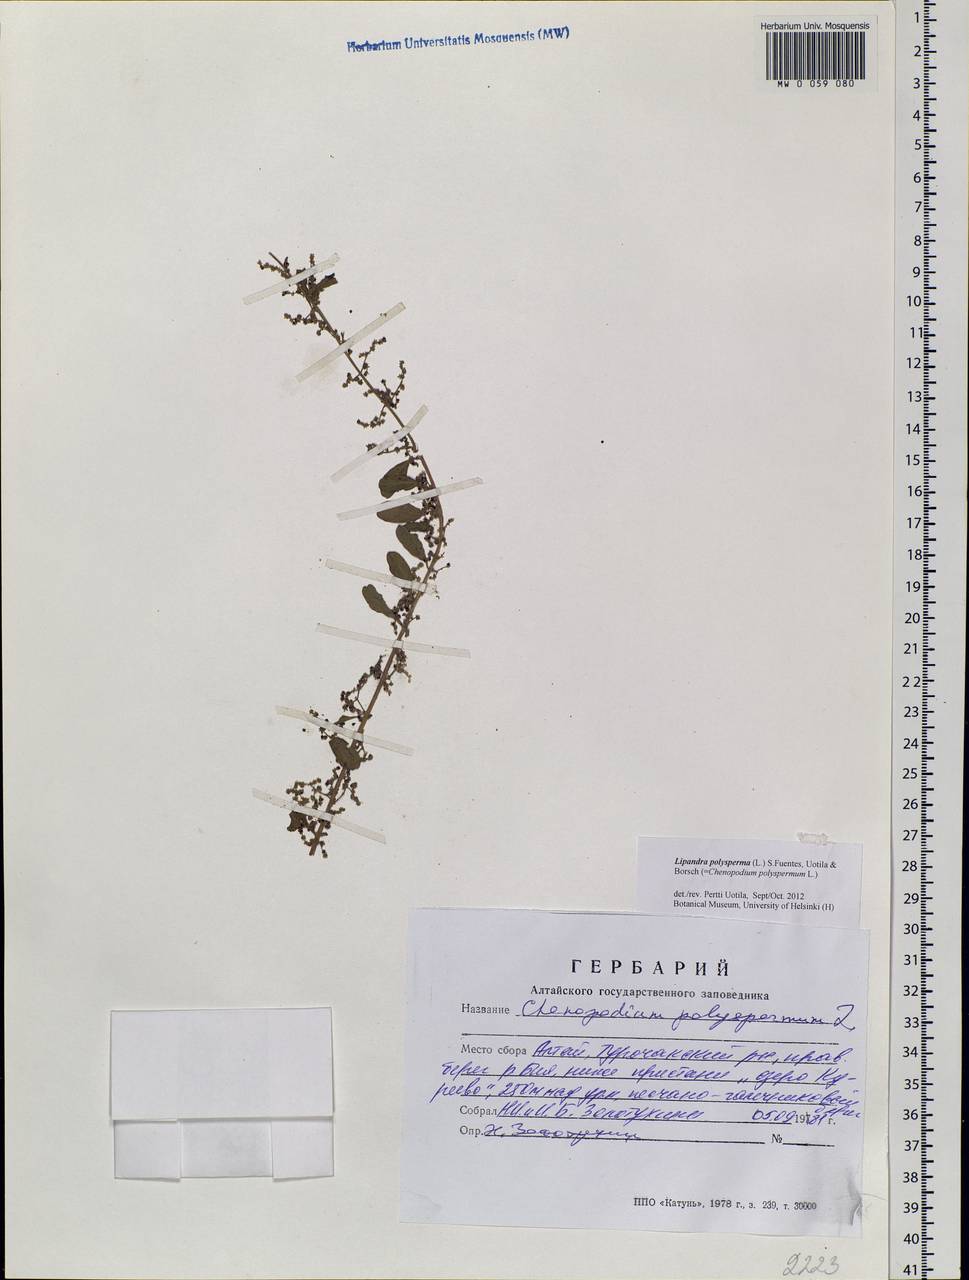 Lipandra polysperma (L.) S. Fuentes, Uotila & Borsch, Сибирь, Алтай и Саяны (S2) (Россия)